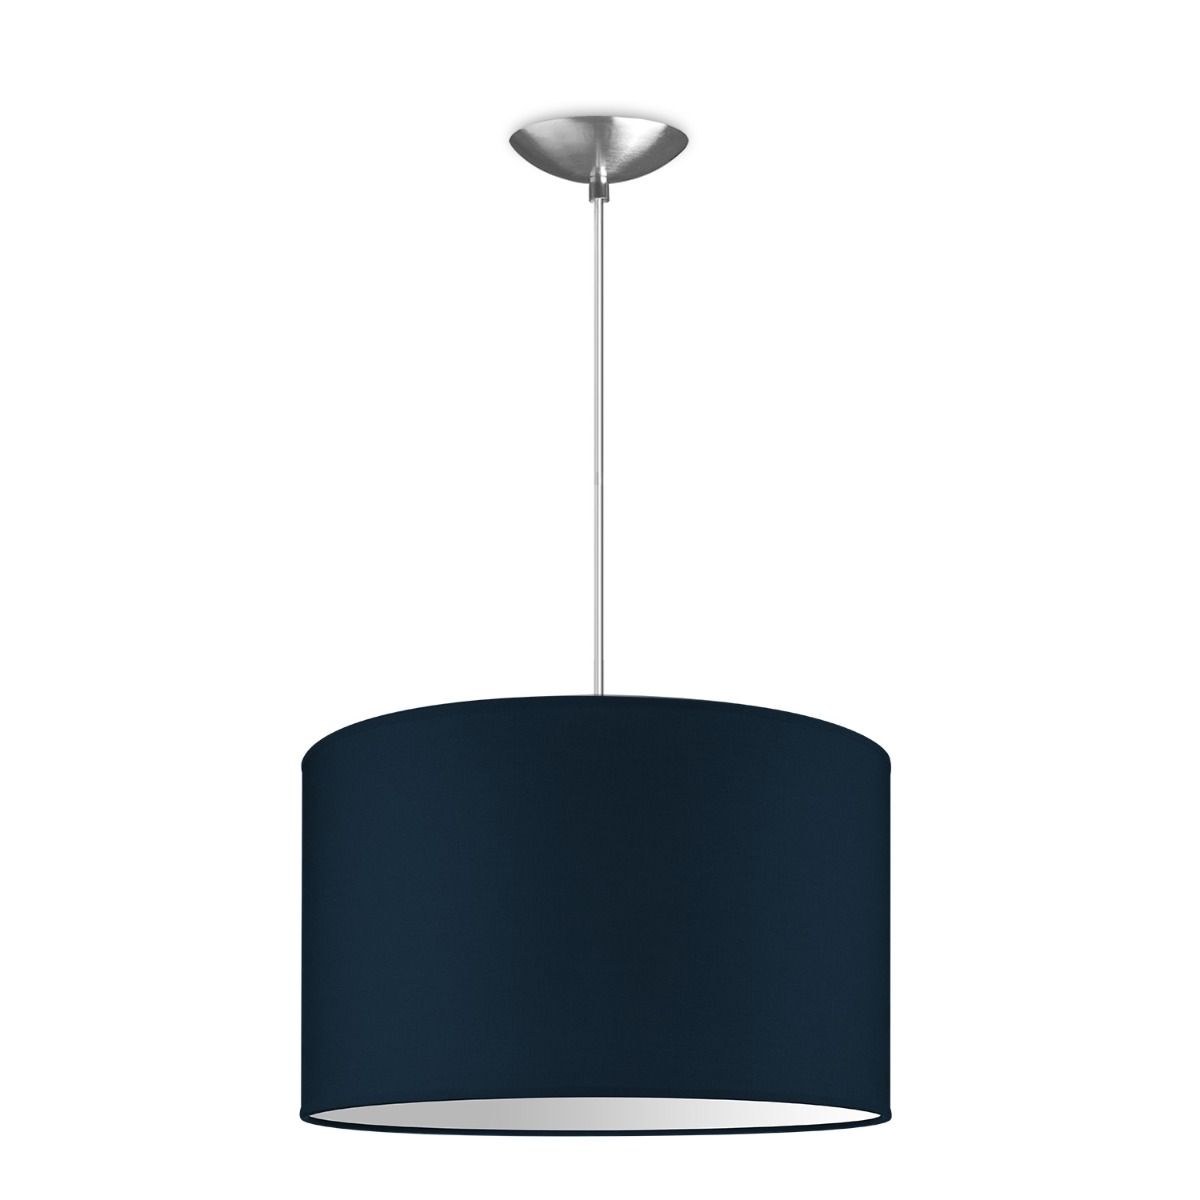 Light depot - hanglamp basic bling Ø 35 cm - blauw - Outlet